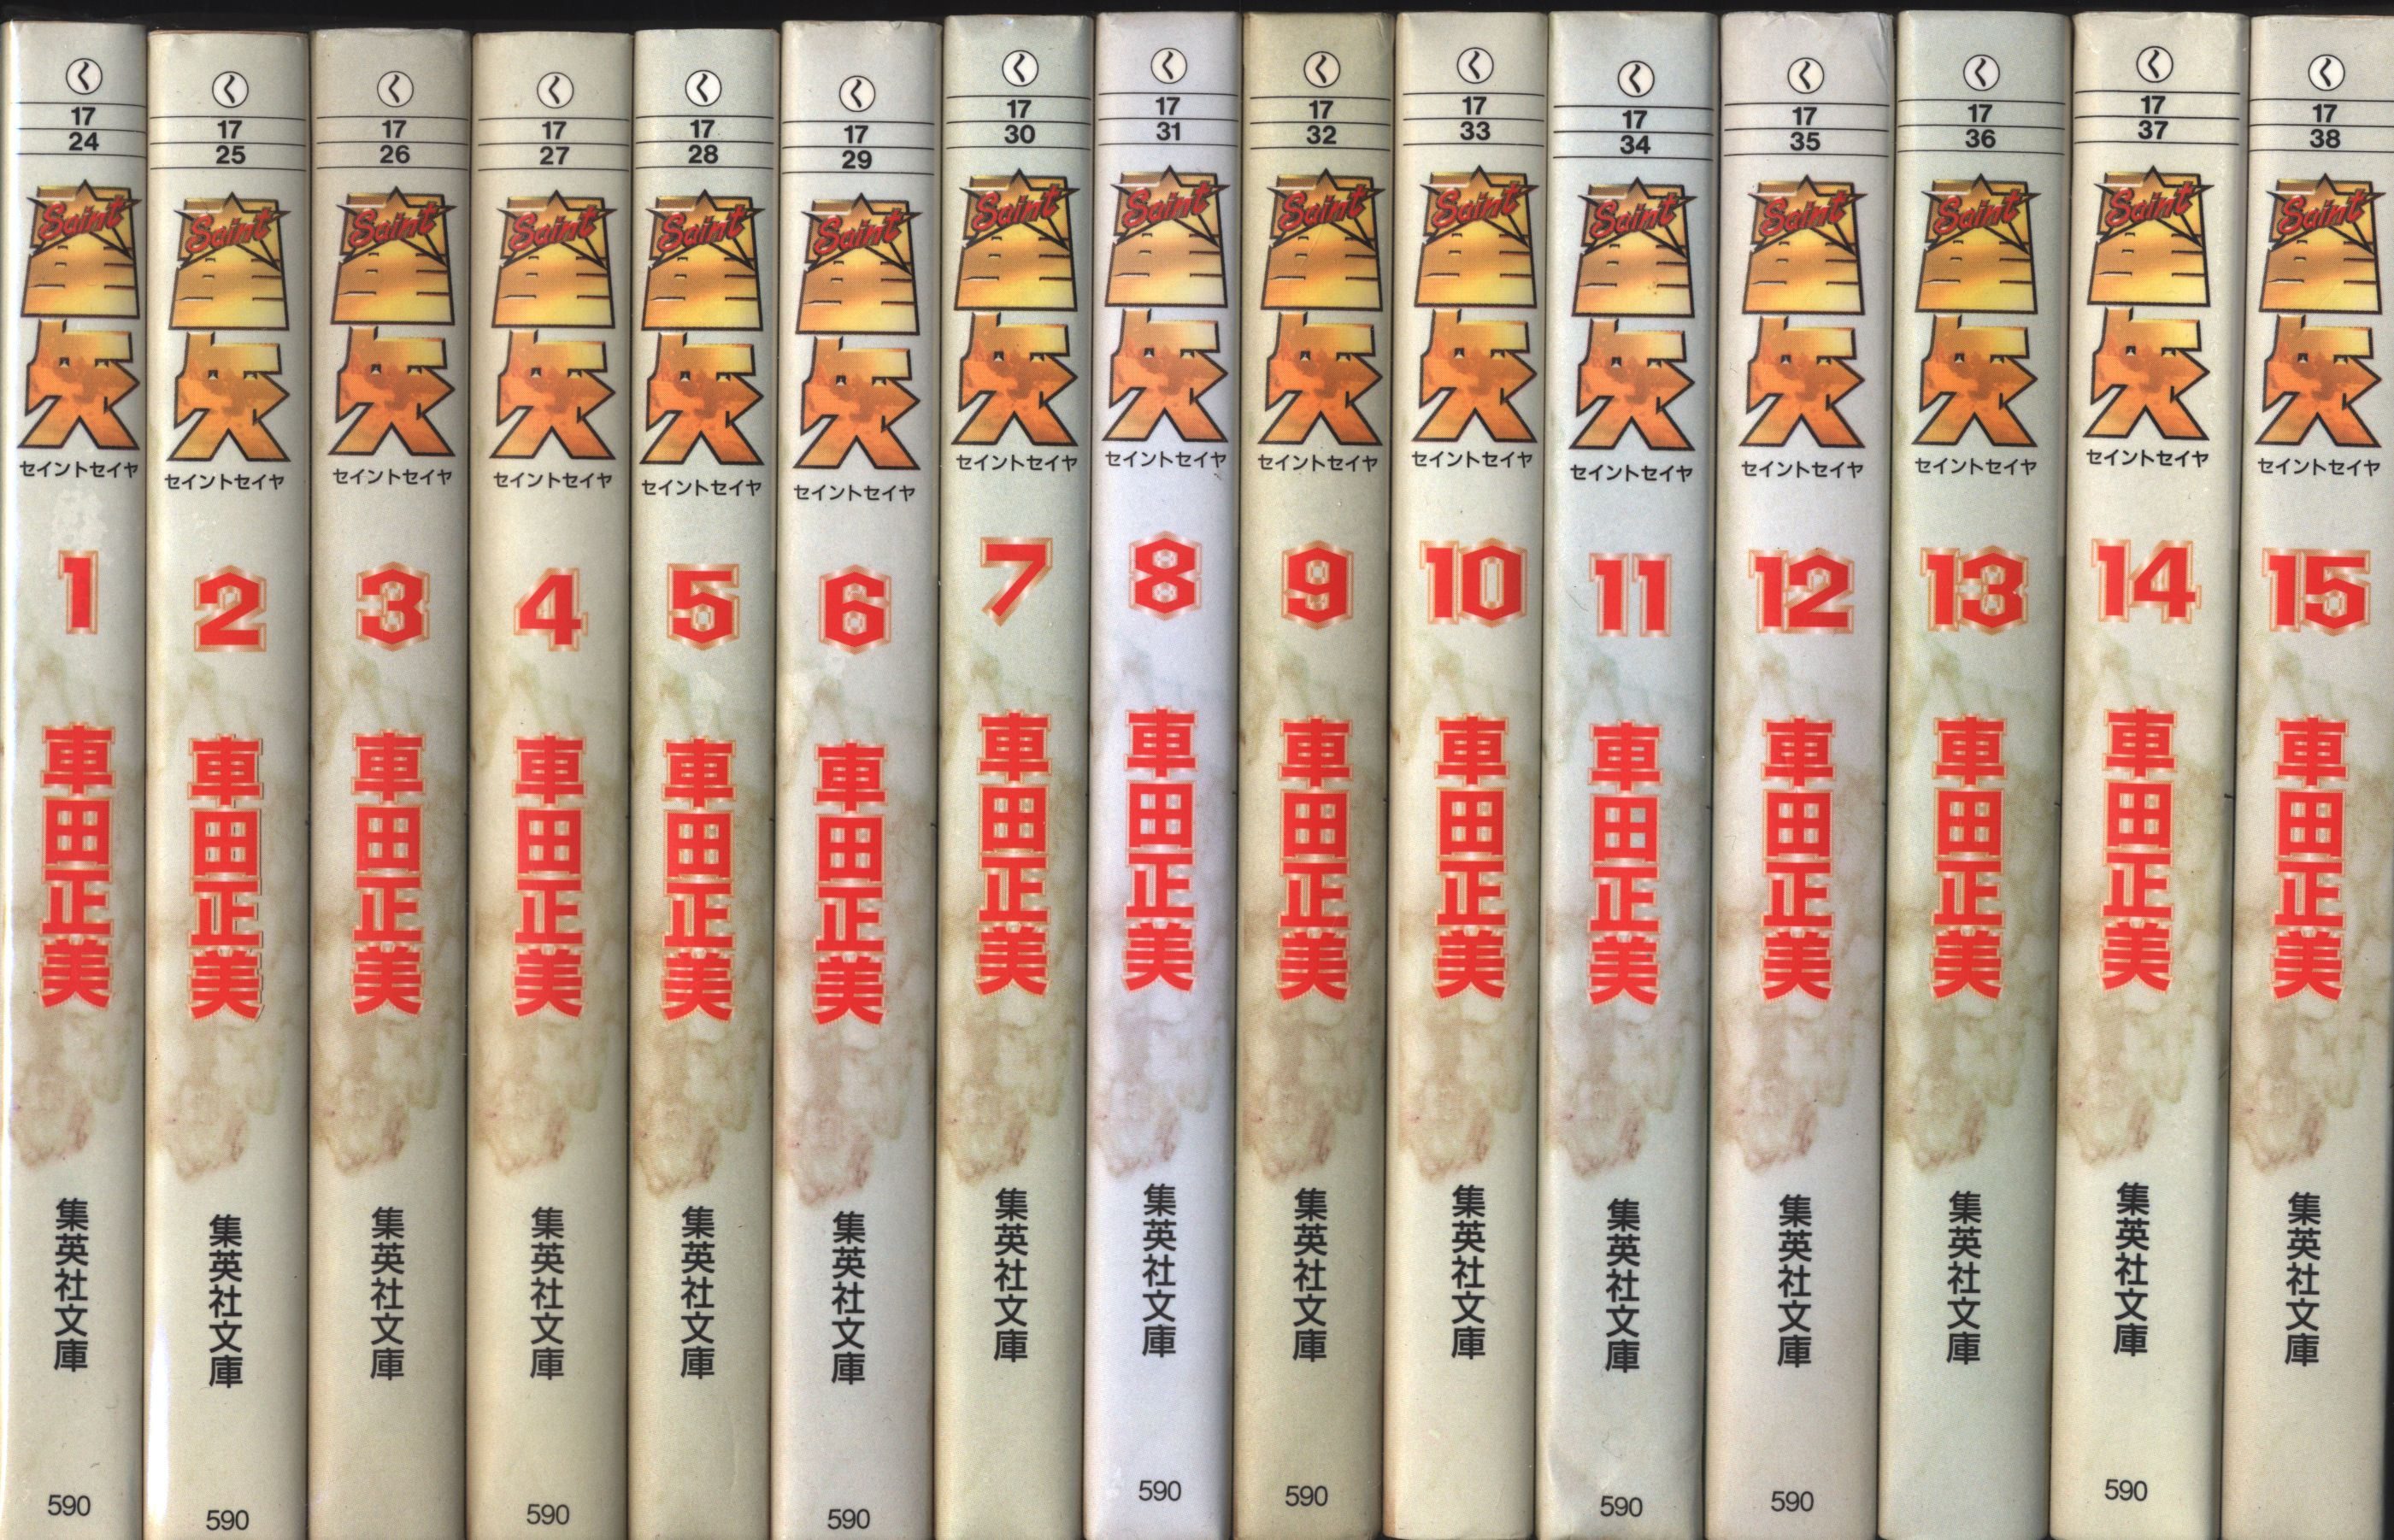 聖闘士星矢 文庫版 全15巻 全巻セット - 全巻セット